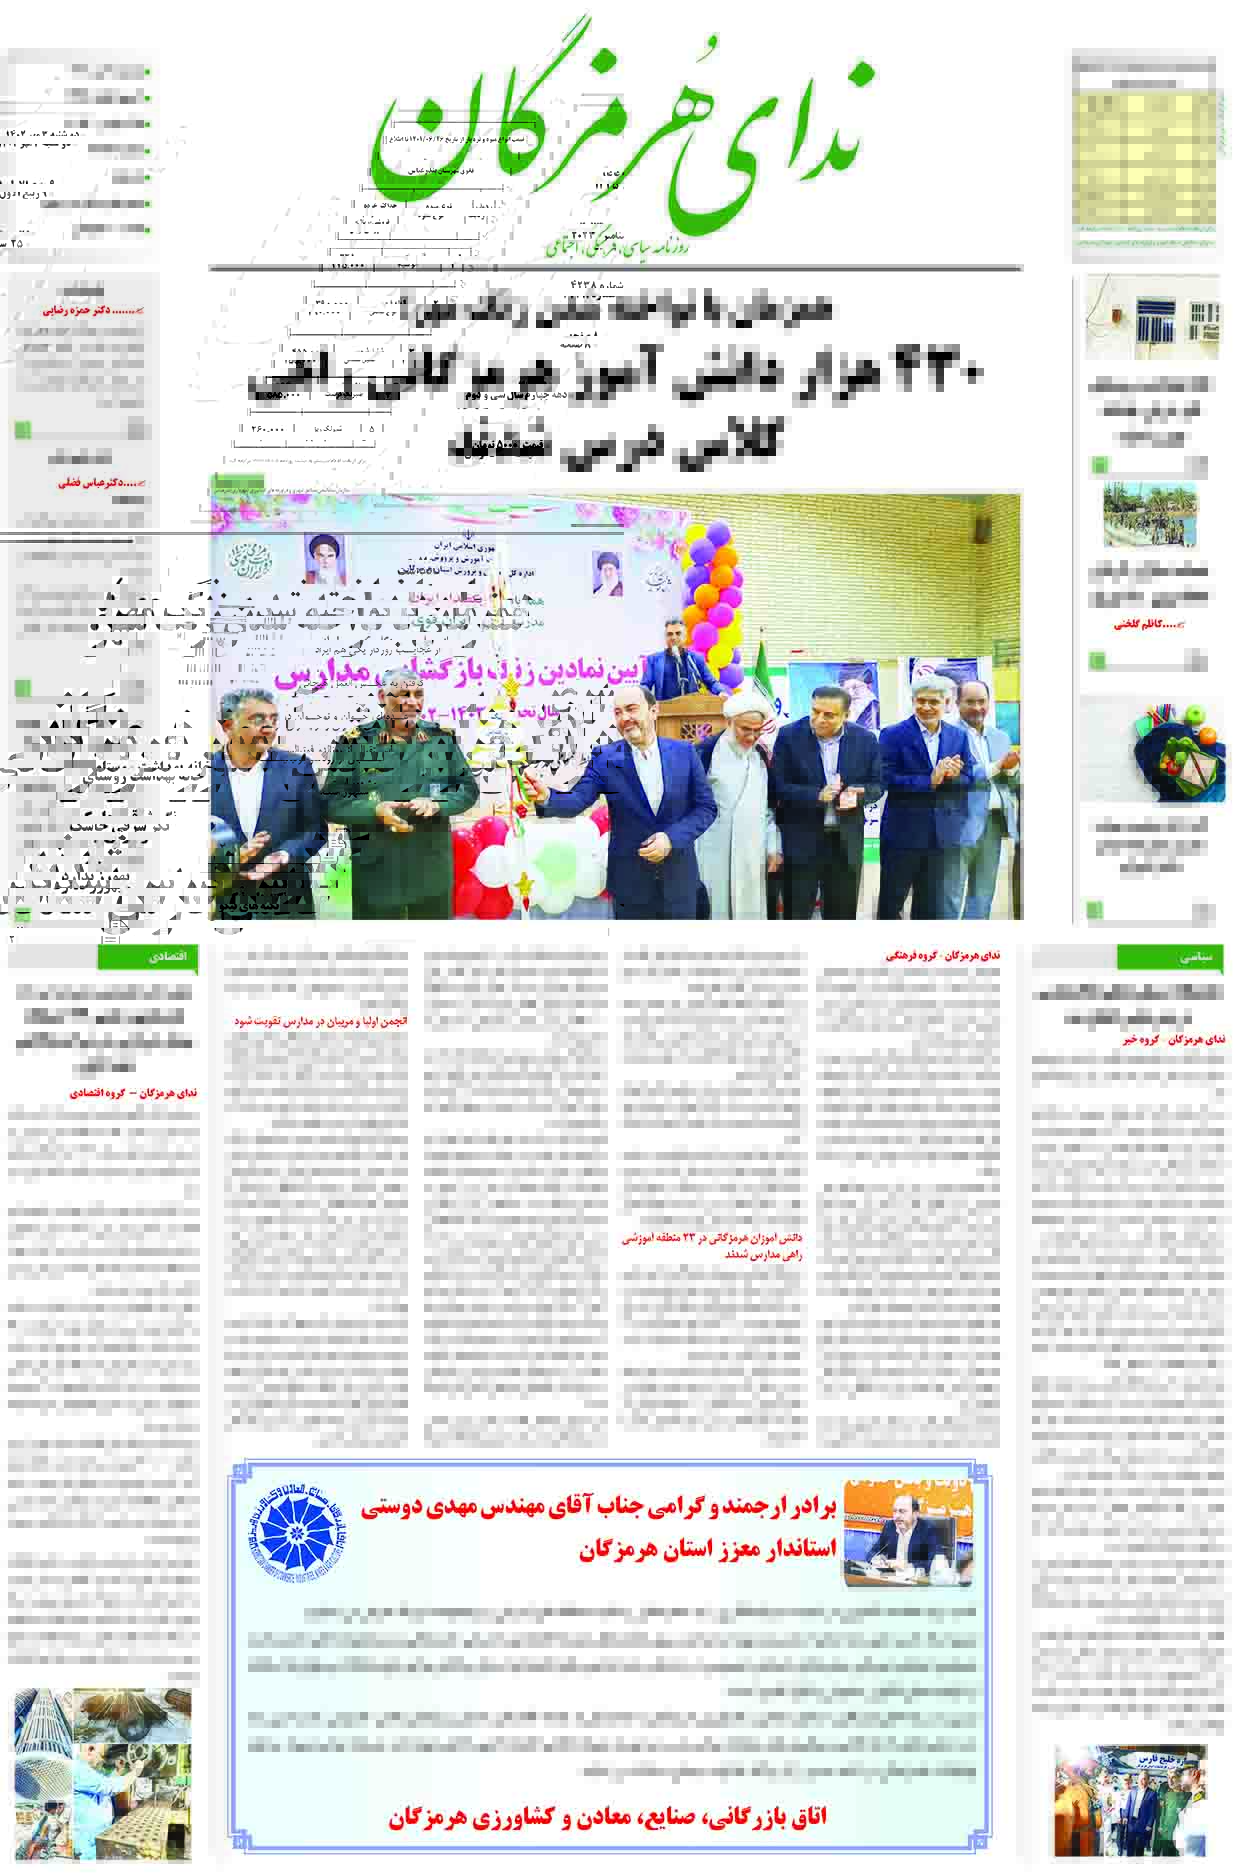 11 8 - رئیس شورای اسلامی شهر بندرعباس: اثرات افزایش ۱۲۰ درصدی ارزش افزوده در بندرعباس دیده نشد